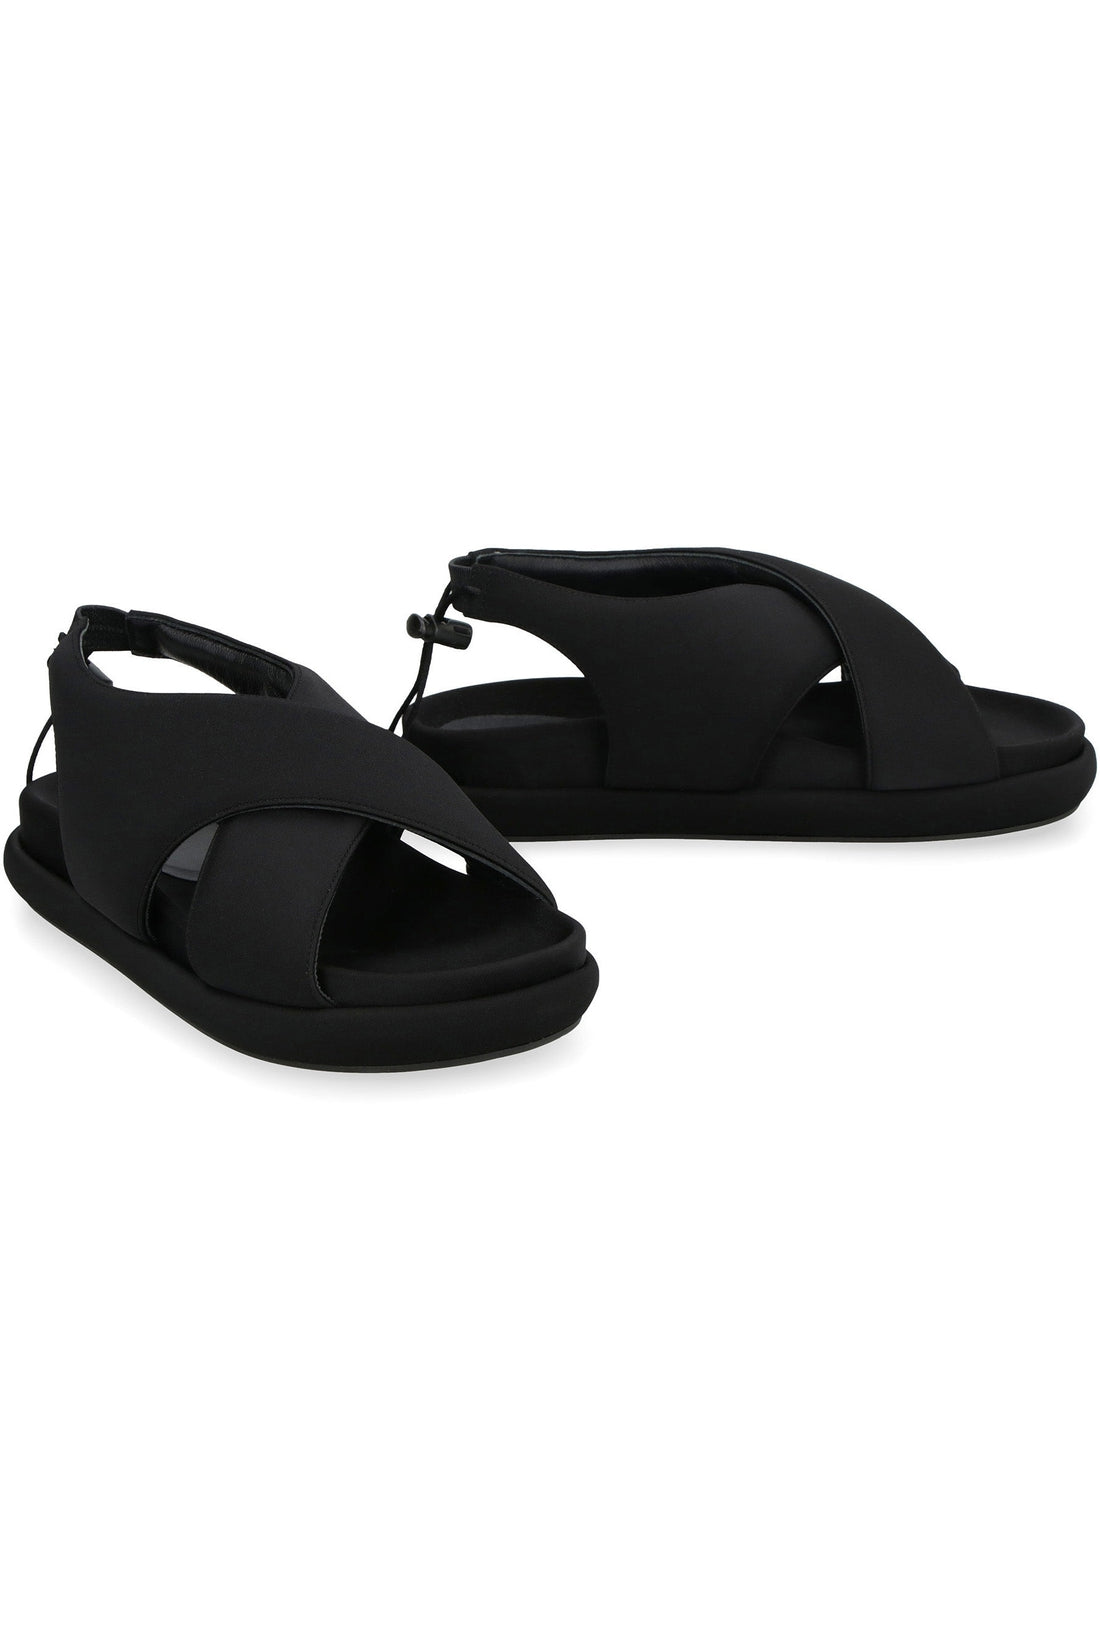 Piralo-OUTLET-SALE-Gia 29 flat sandals-ARCHIVIST